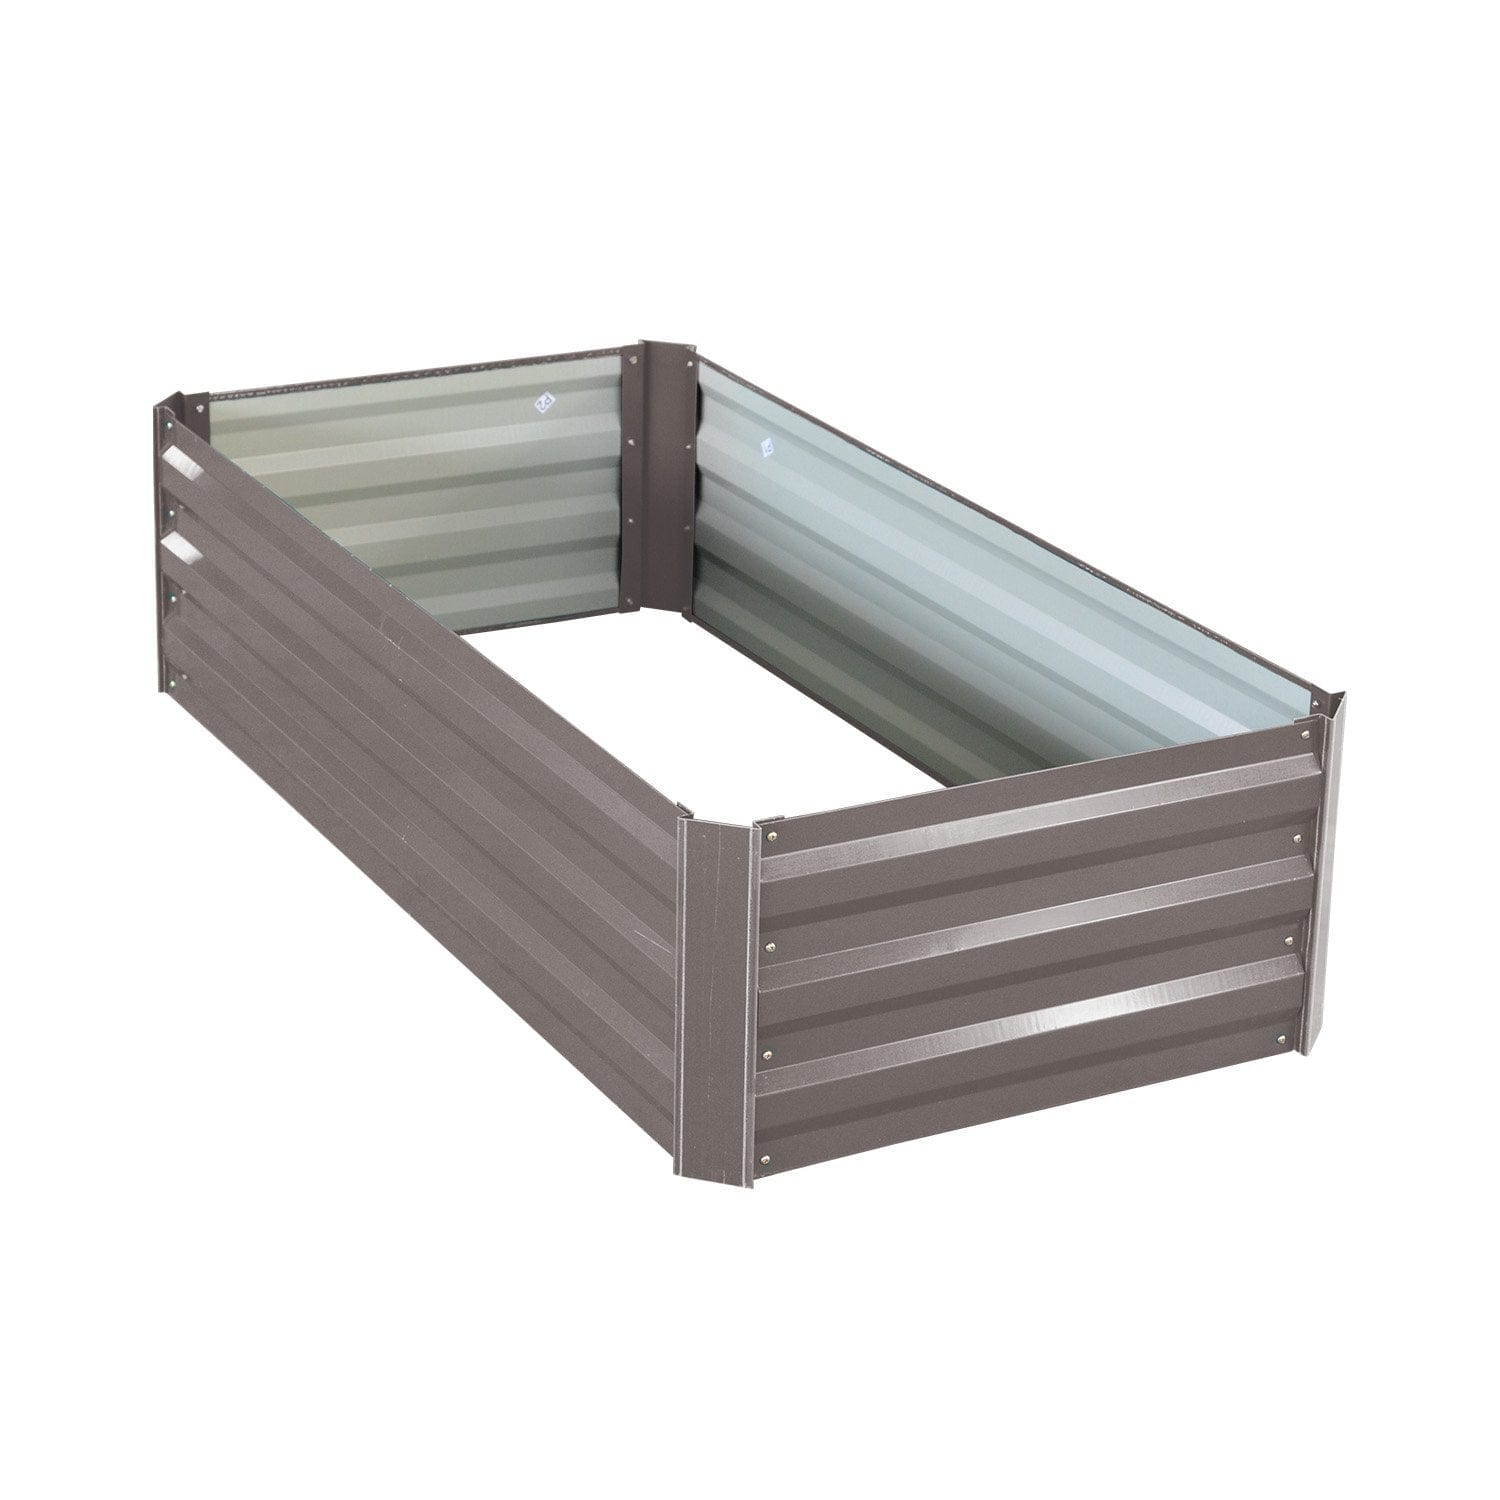 Garden Bed 120 x 60 x 30cm Galvanized Steel - Grey